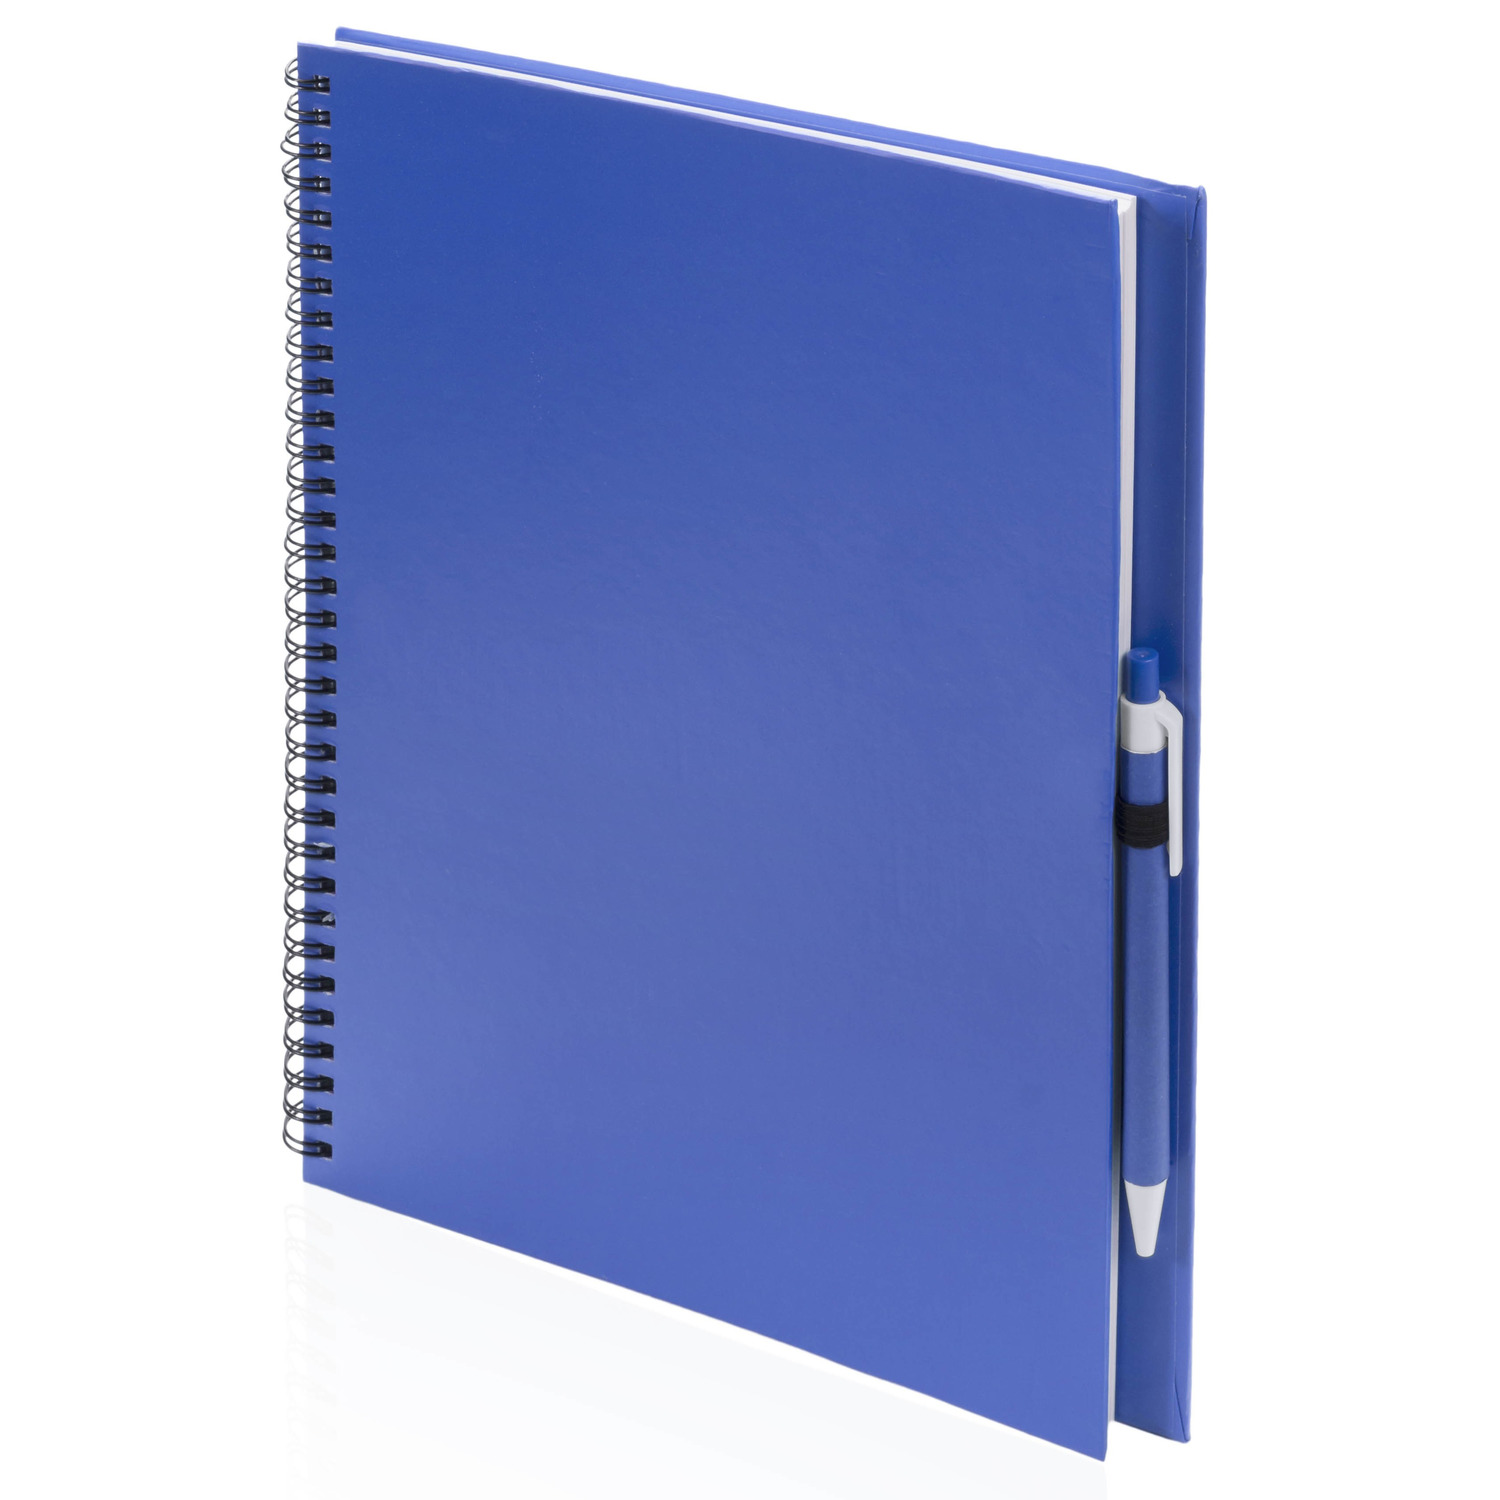 2x Schetsboeken-tekenboeken blauw A4 formaat 80 vellen inclusief pennen